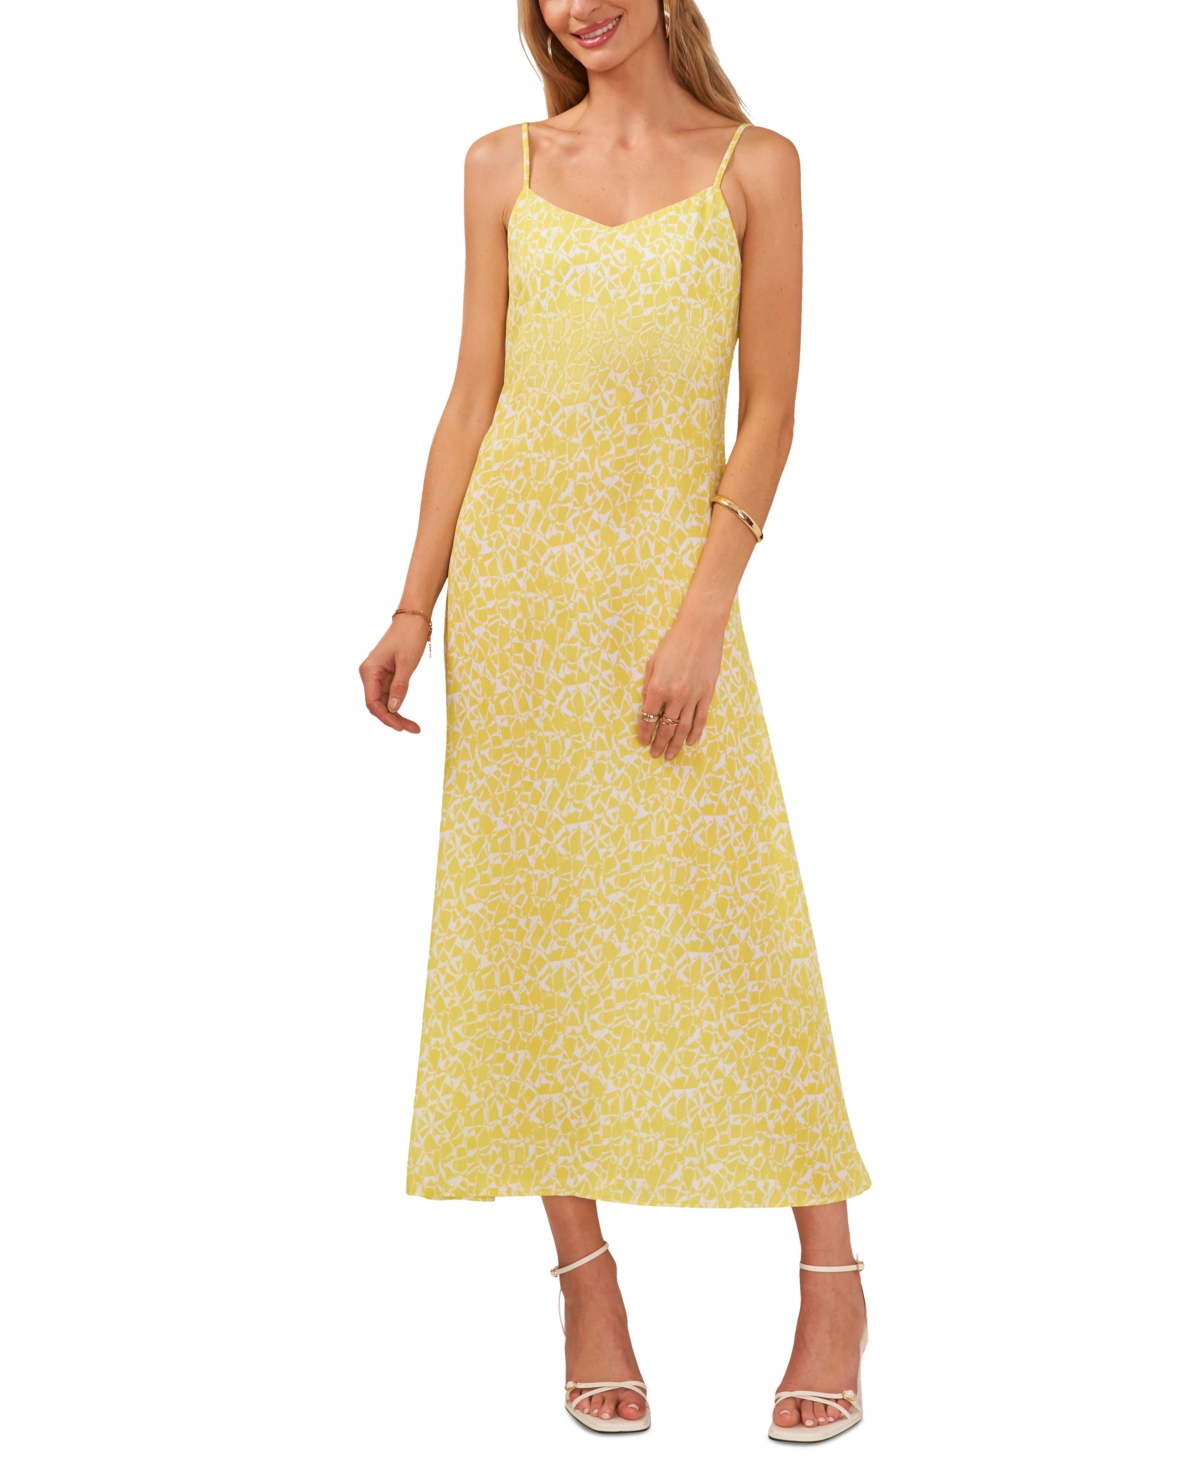 Women's Printed V-Neck Spaghetti-Strap Midi Dress - Bright Lemon